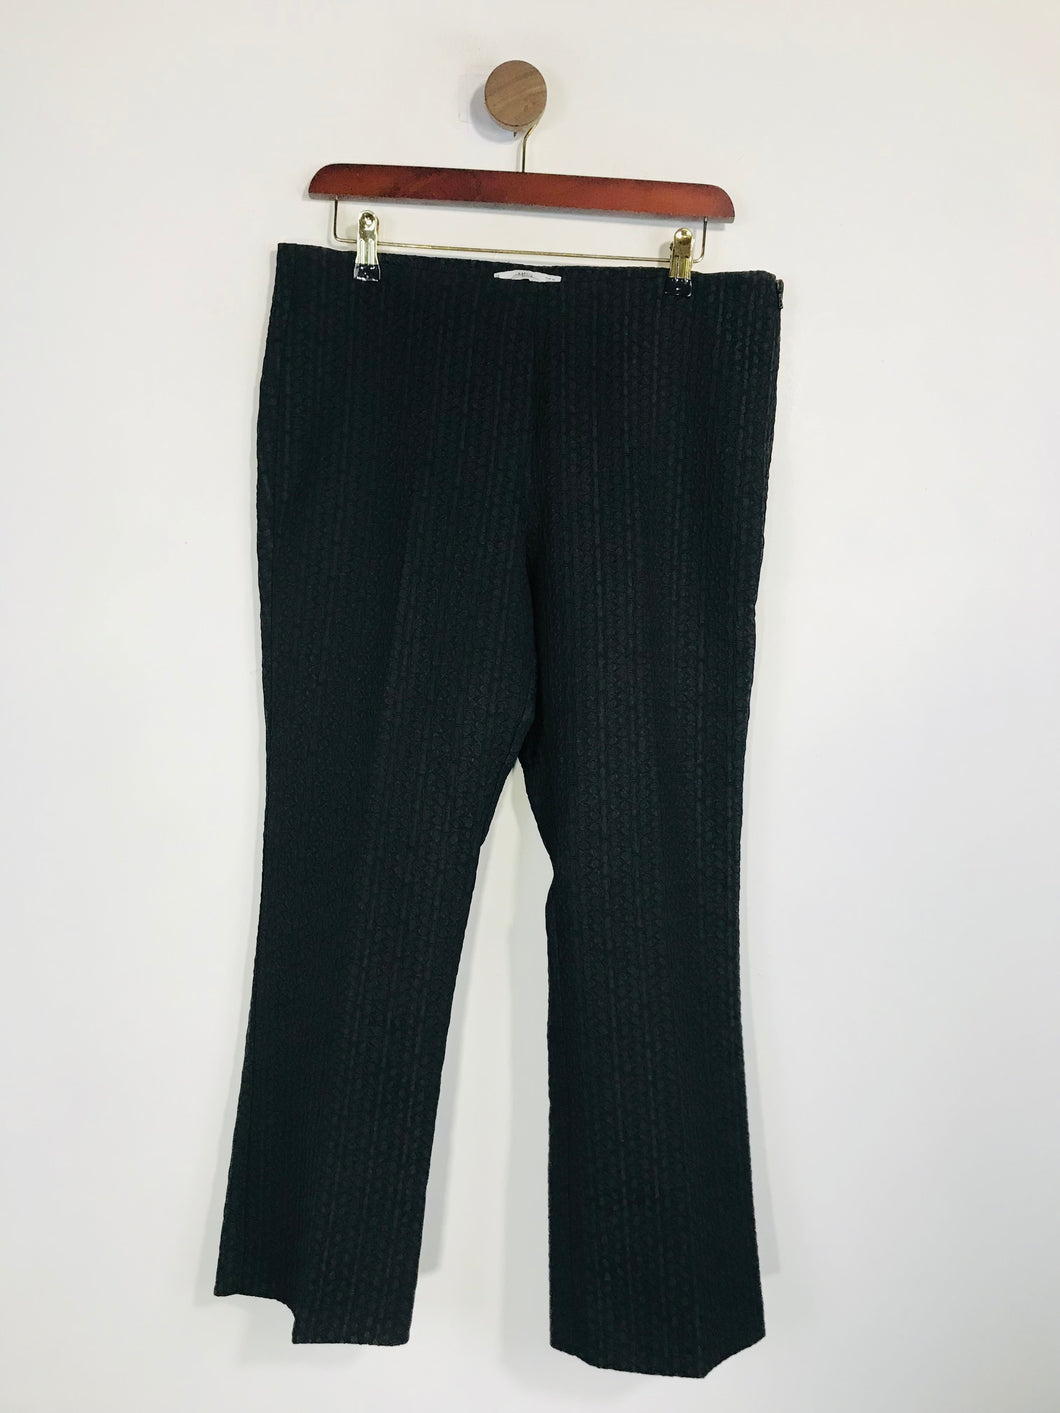 Mango Women's Floral High Waist Smart Trousers | EU40 UK12 | Black